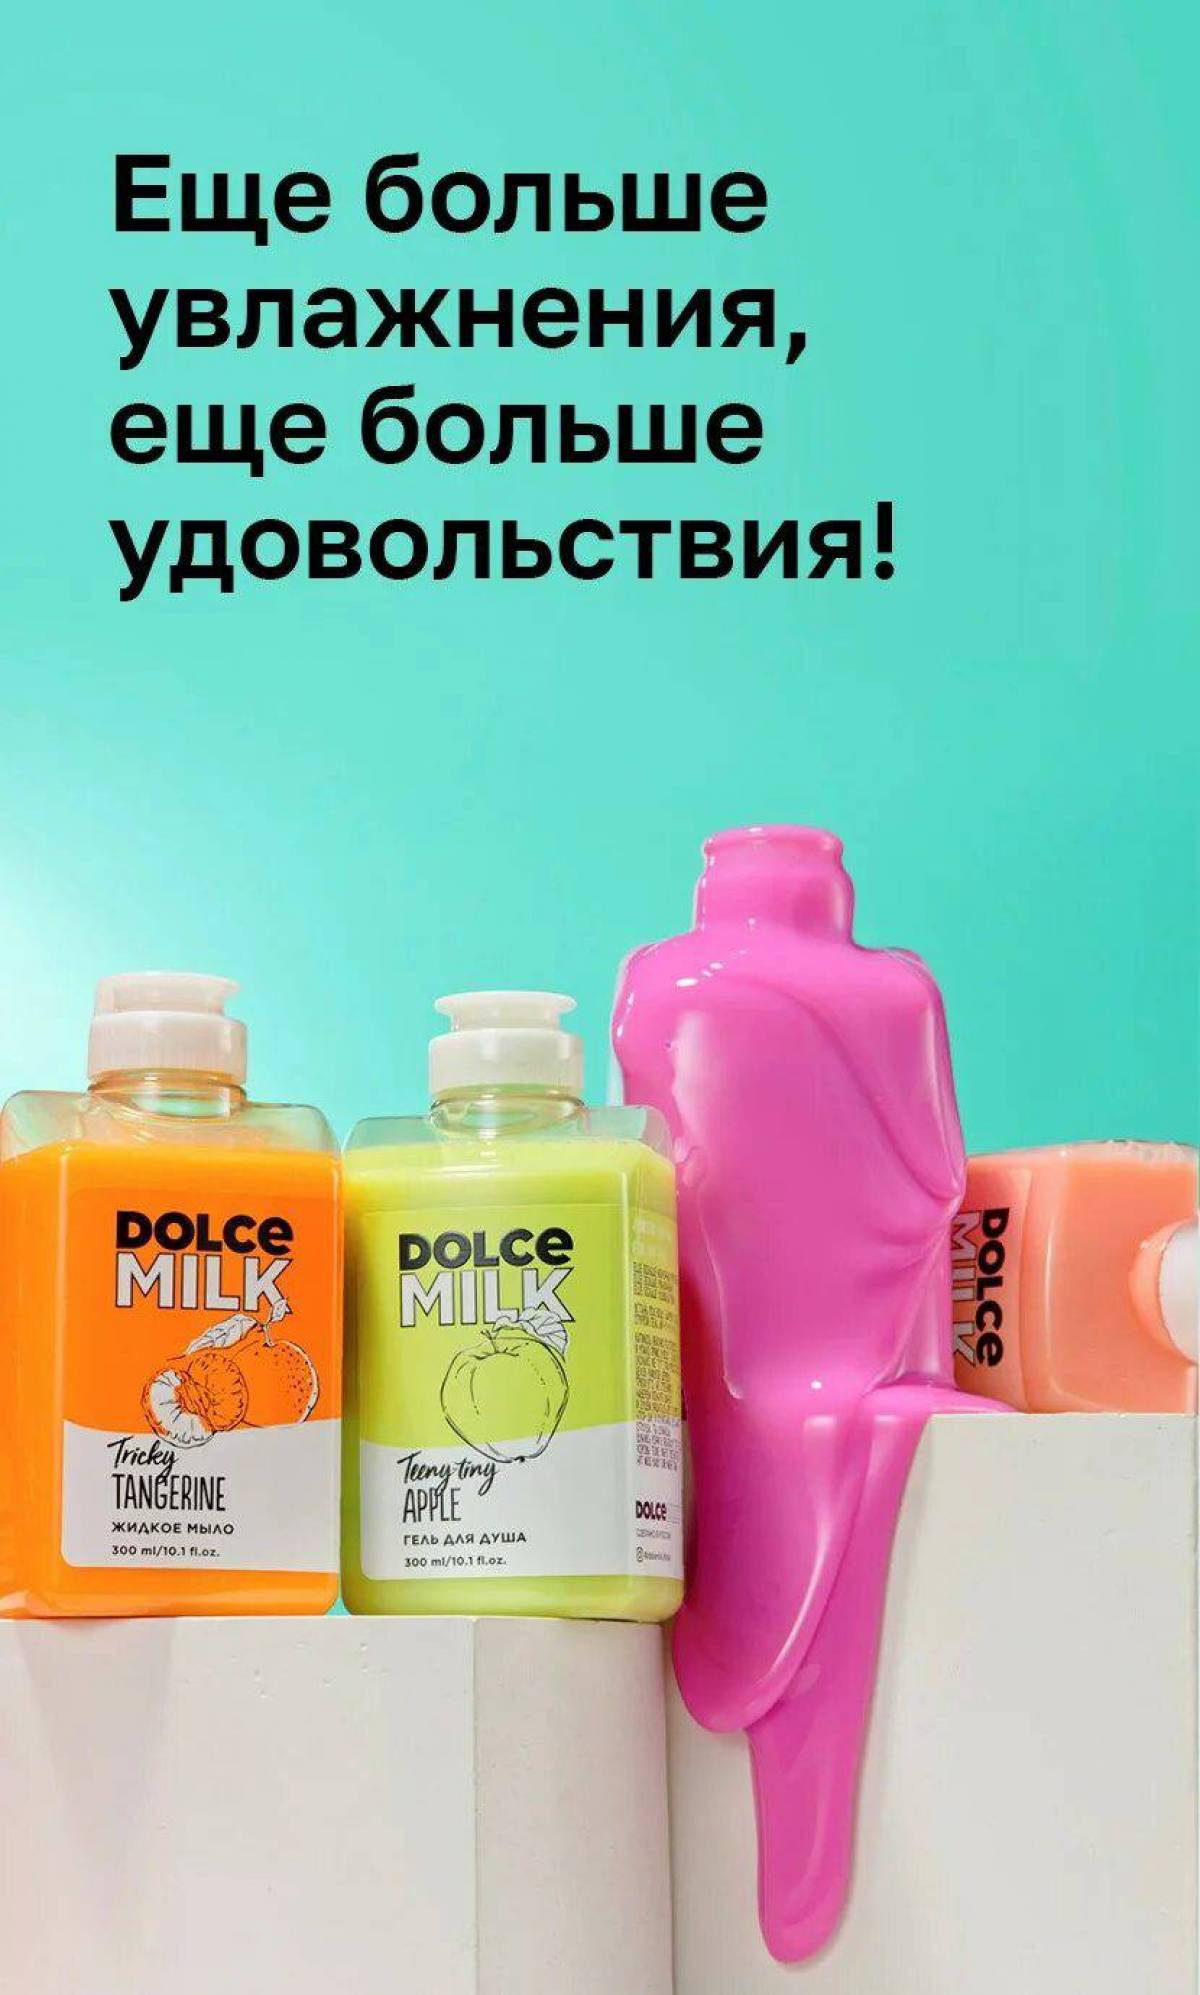 Dolce milk #9